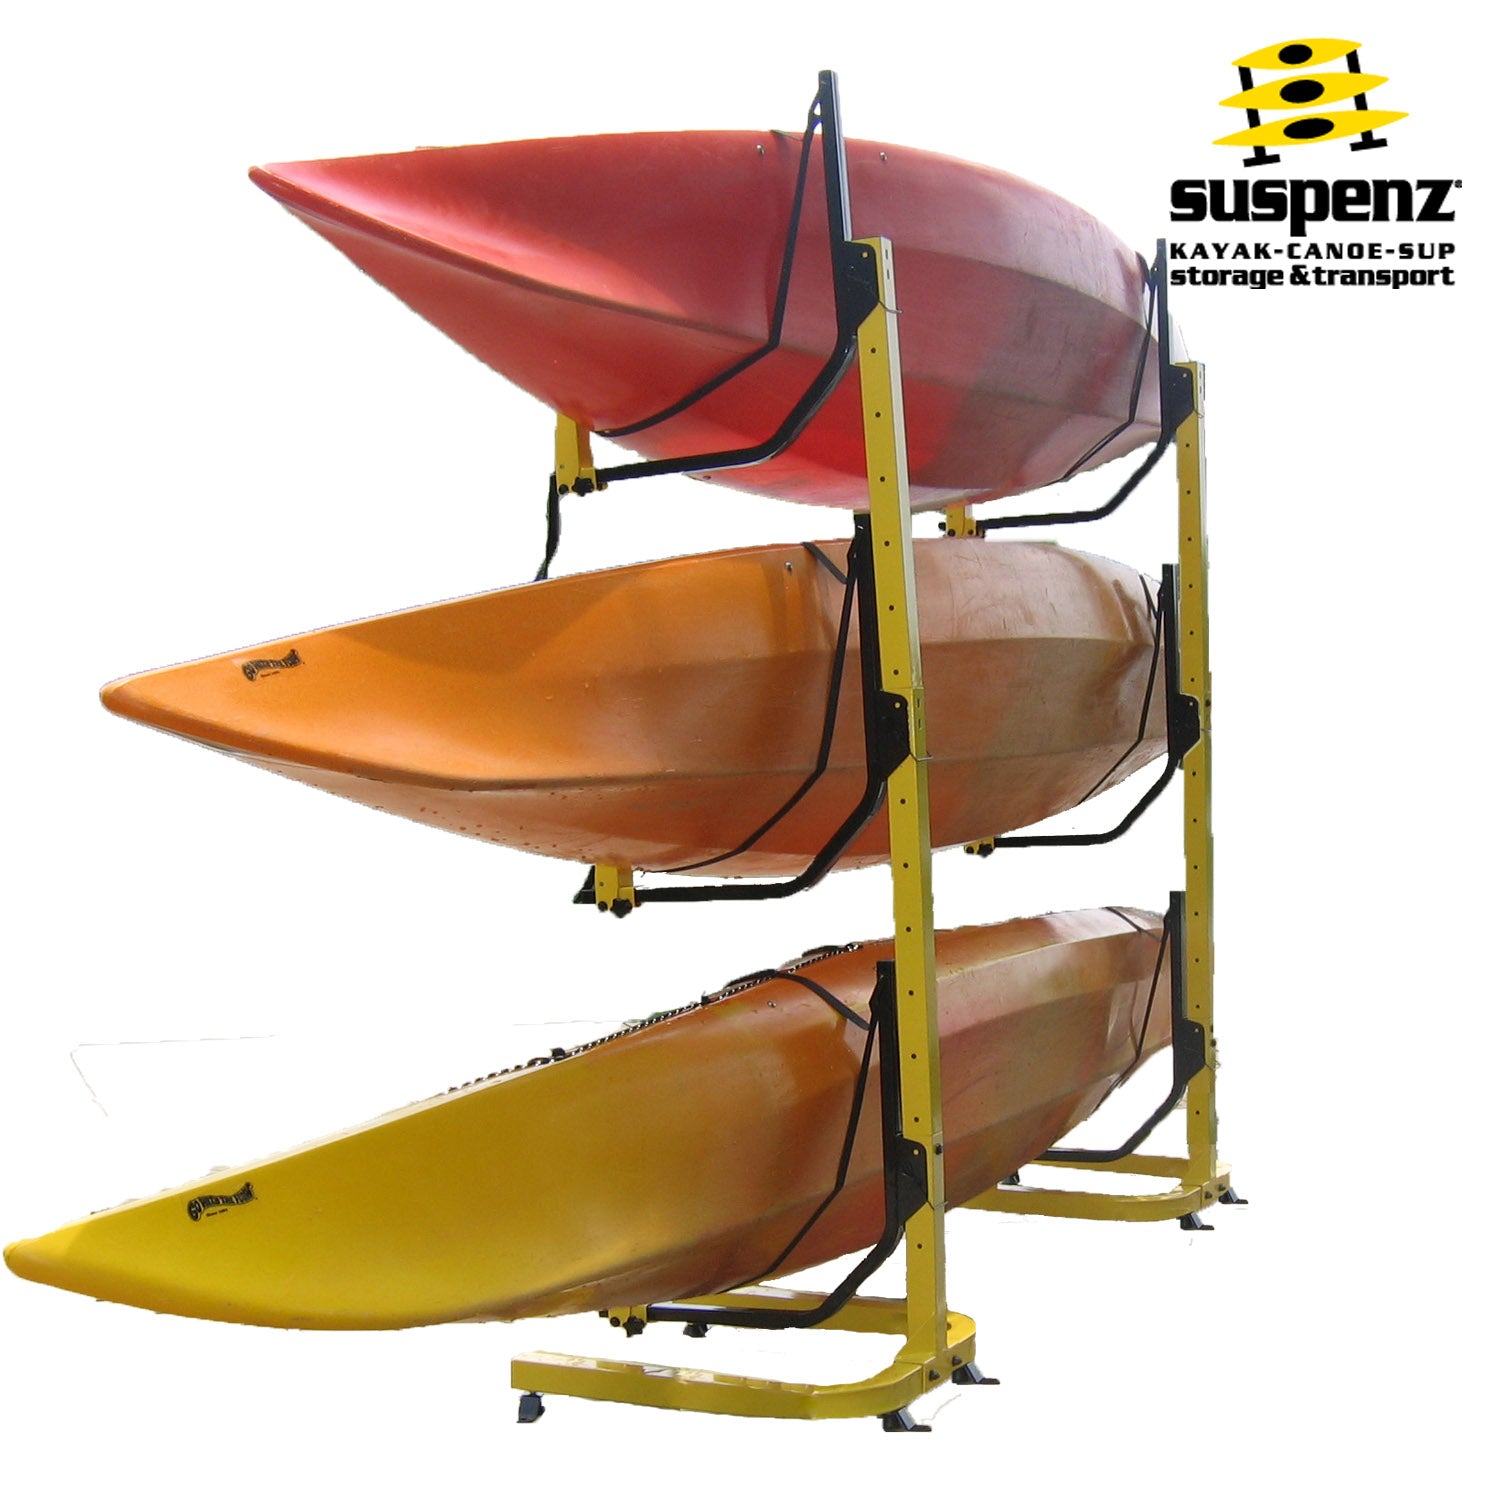 Triple Kayak & Canoe Rack, 3 Kayak Holder